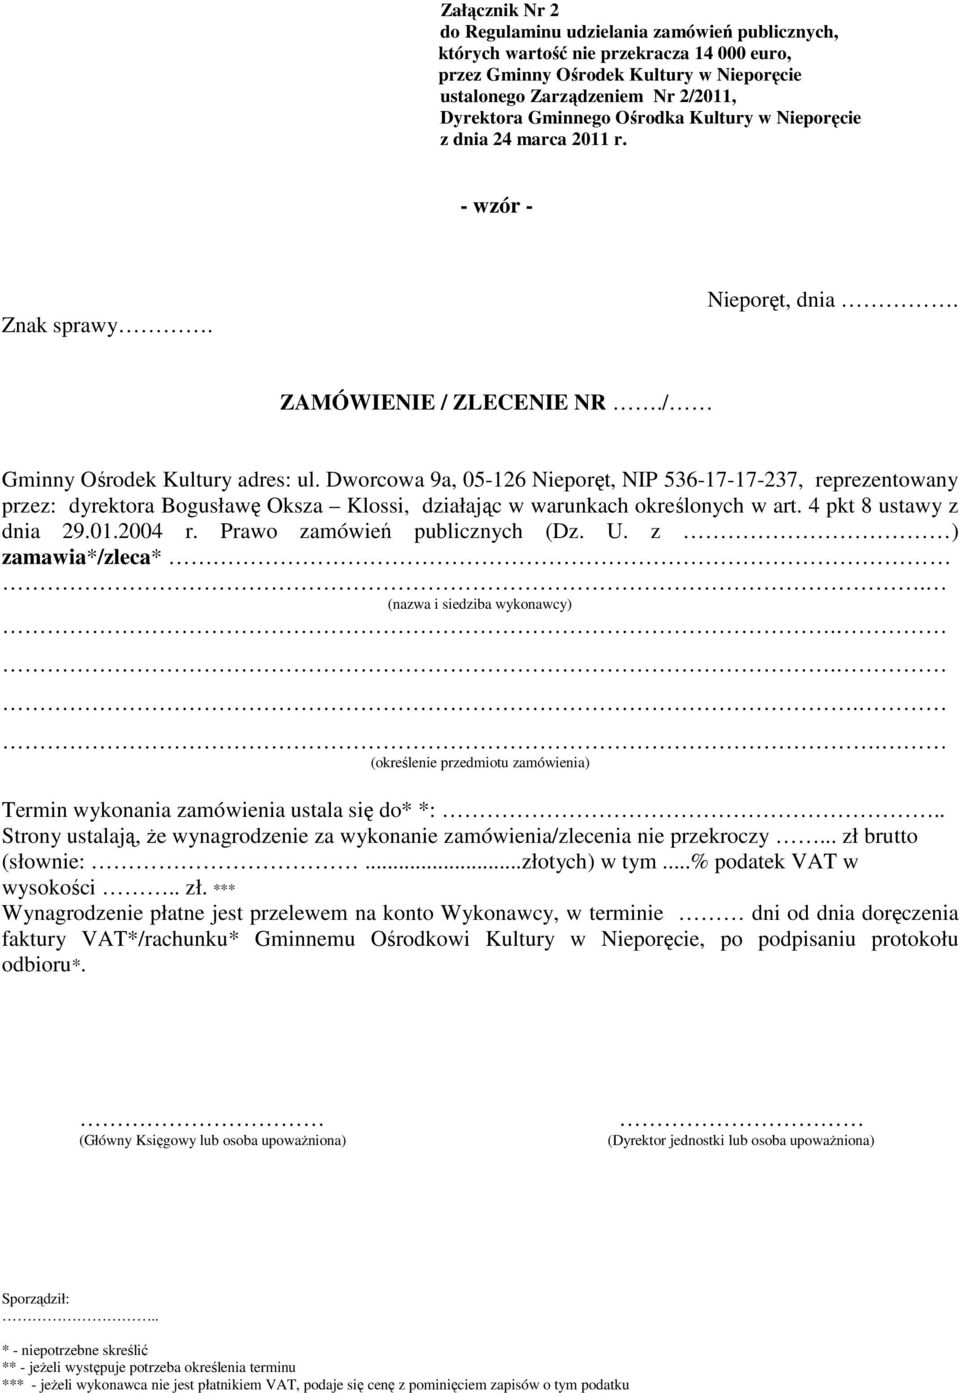 Dworcowa 9a, 05-126 Nieporęt, NIP 536-17-17-237, reprezentowany przez: dyrektora Bogusławę Oksza Klossi, działając w warunkach określonych w art. 4 pkt 8 ustawy z dnia 29.01.2004 r.